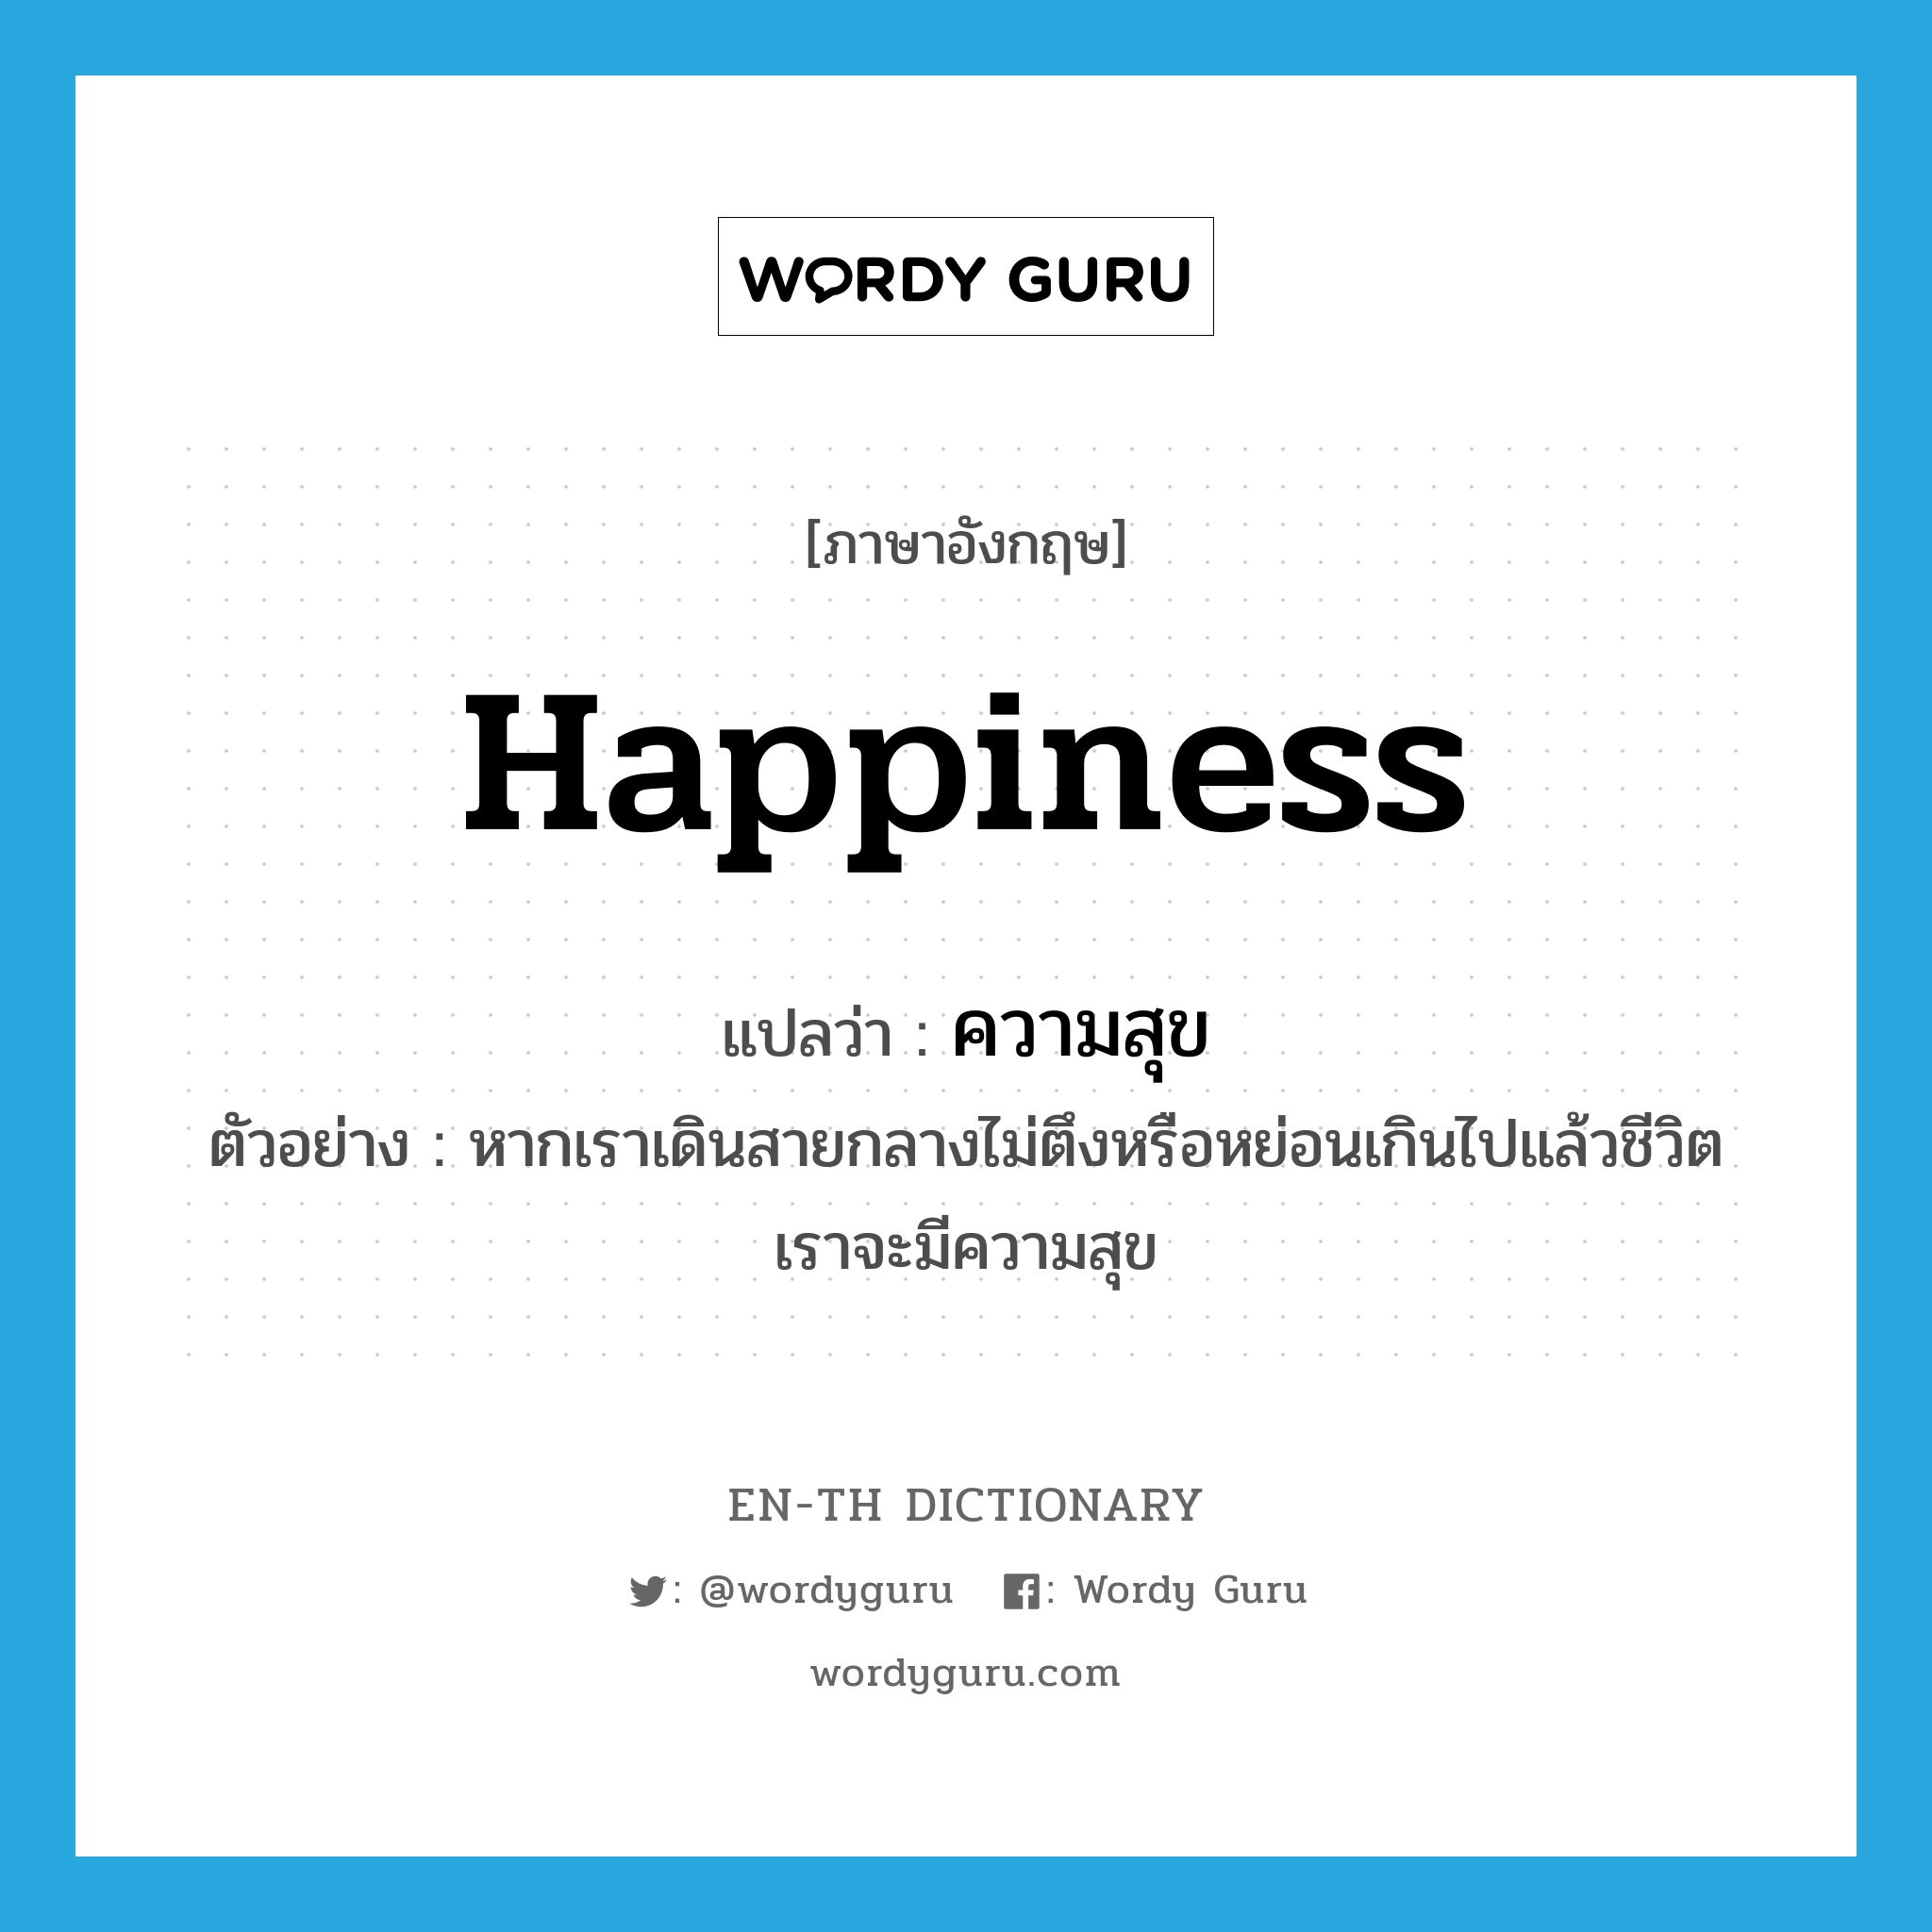 ความสุข ภาษาอังกฤษ?, คำศัพท์ภาษาอังกฤษ ความสุข แปลว่า happiness ประเภท N ตัวอย่าง หากเราเดินสายกลางไม่ตึงหรือหย่อนเกินไปแล้วชีวิตเราจะมีความสุข หมวด N